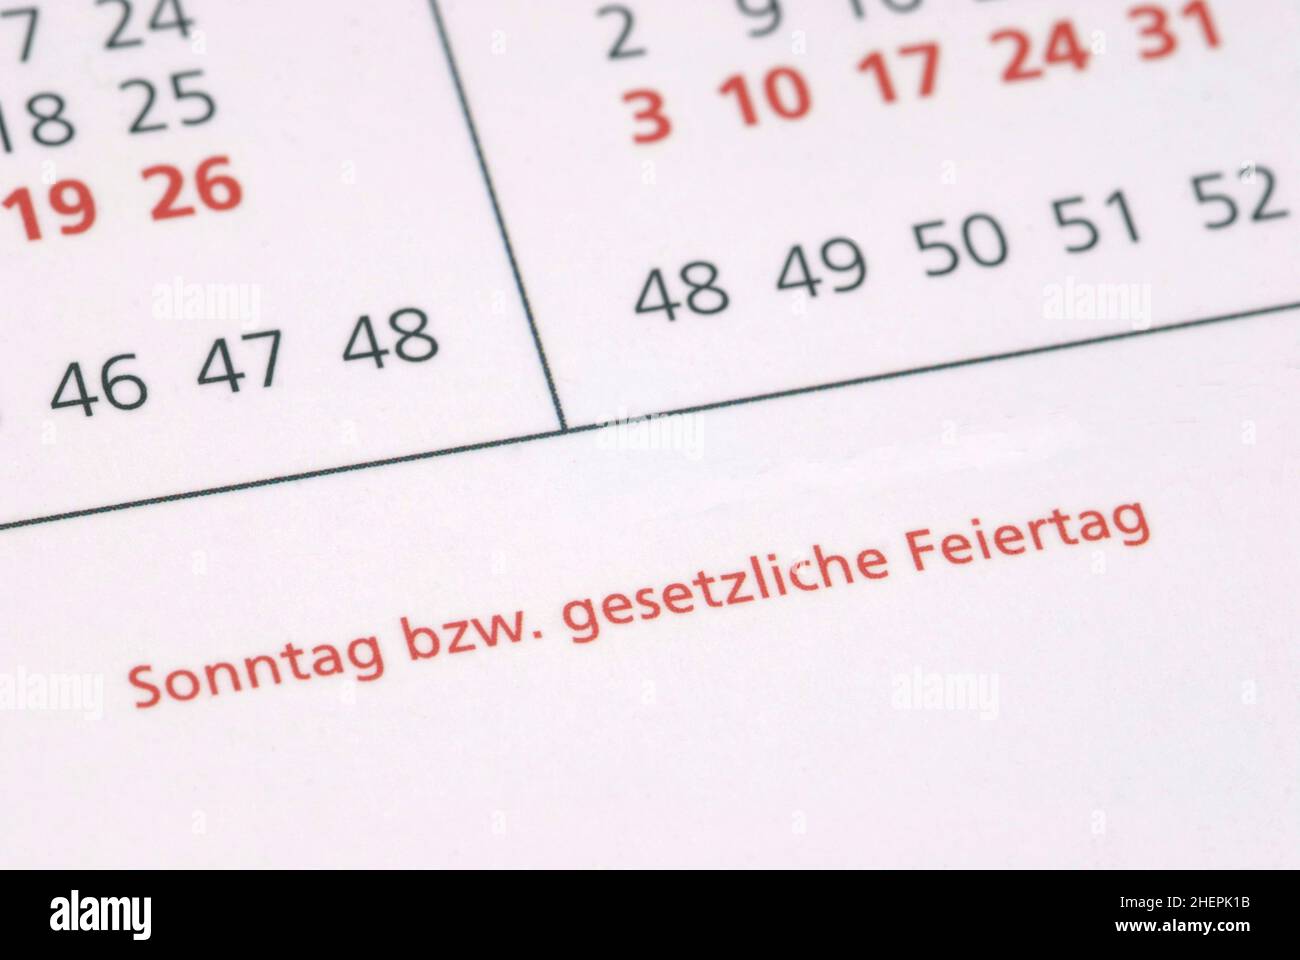 Sonntag oder Feiertage, Erklärung auf einem Kalender Stockfoto